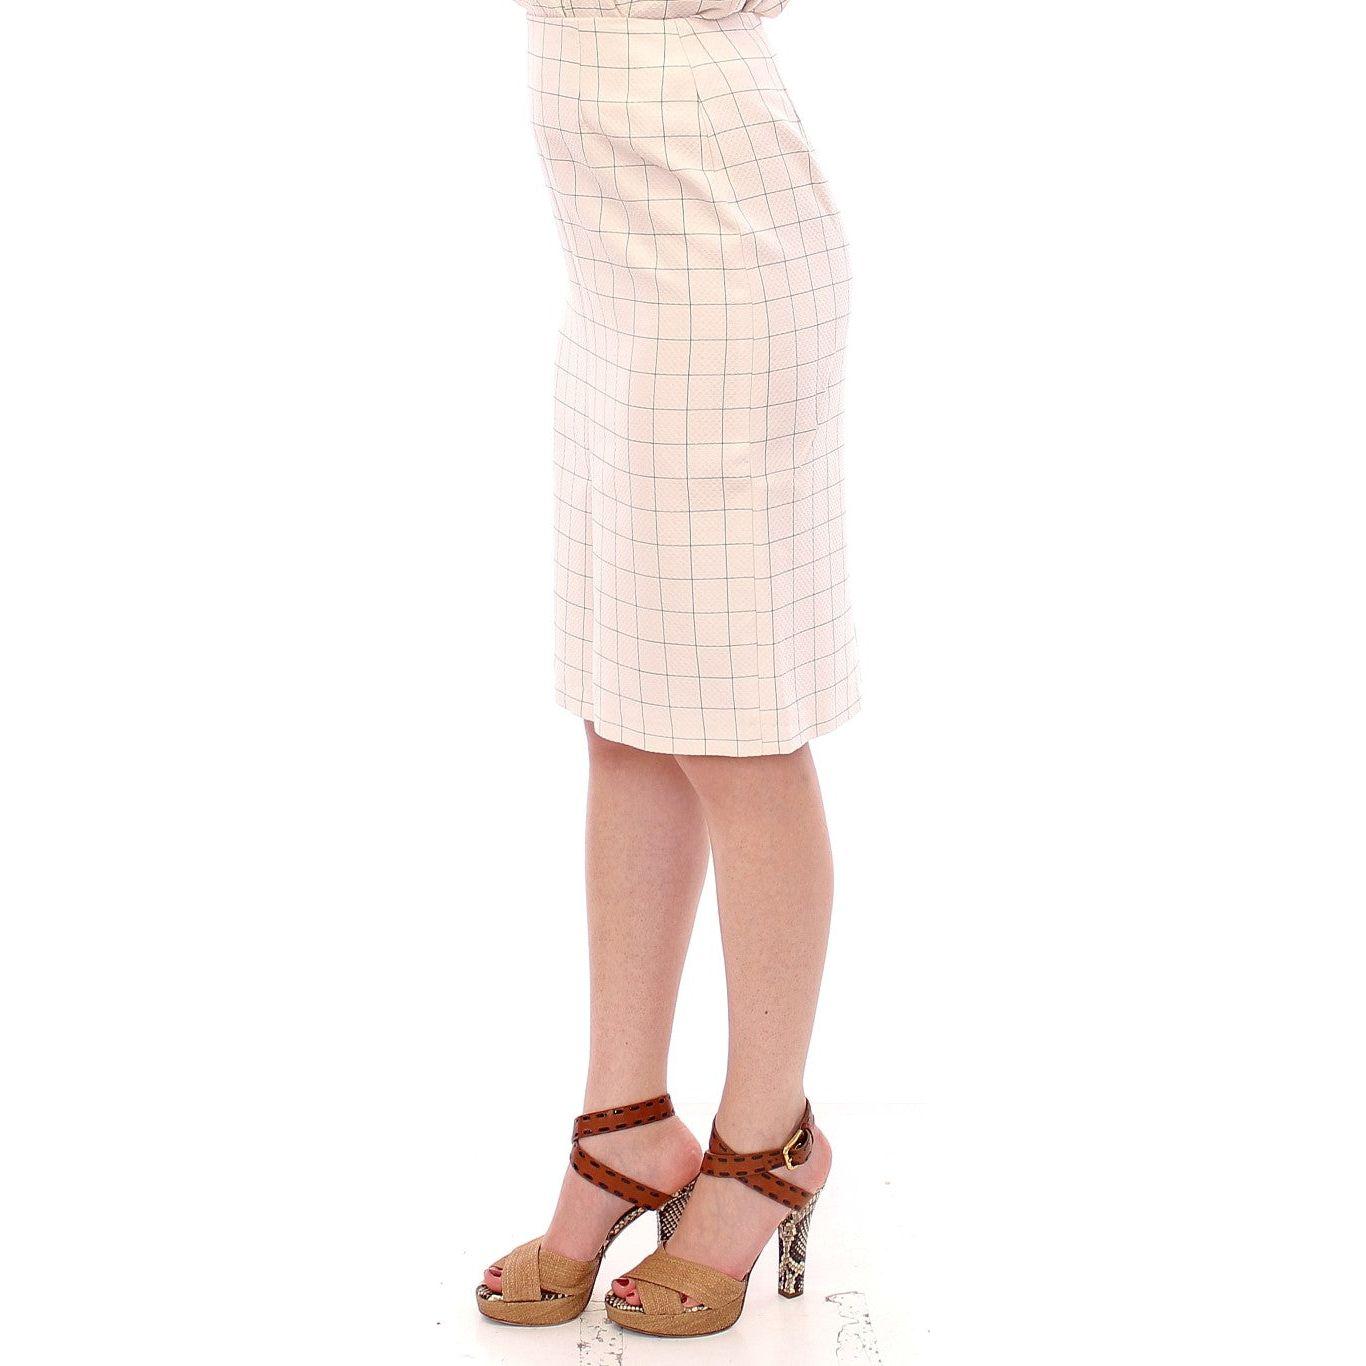 Andrea Incontri | White Cotton Checkered Pencil Skirt | McRichard Designer Brands